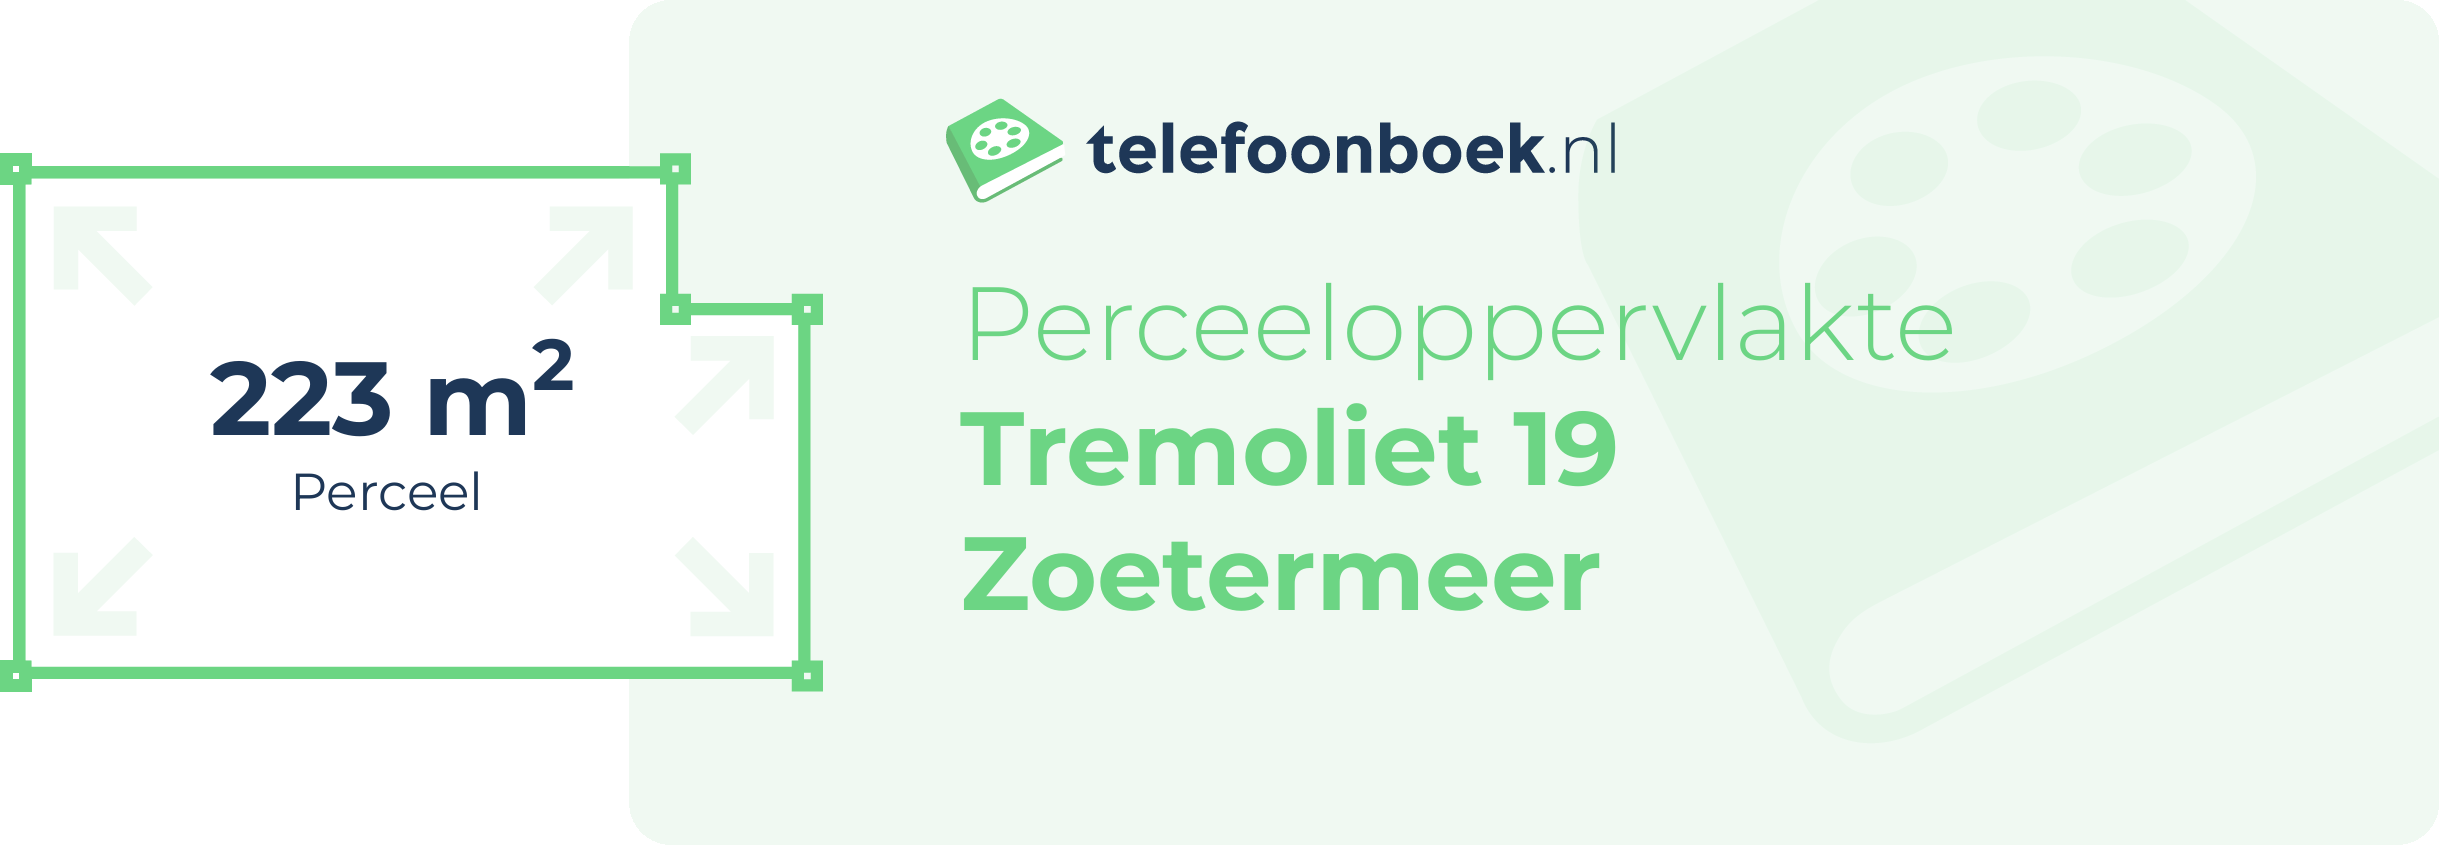 Perceeloppervlakte Tremoliet 19 Zoetermeer